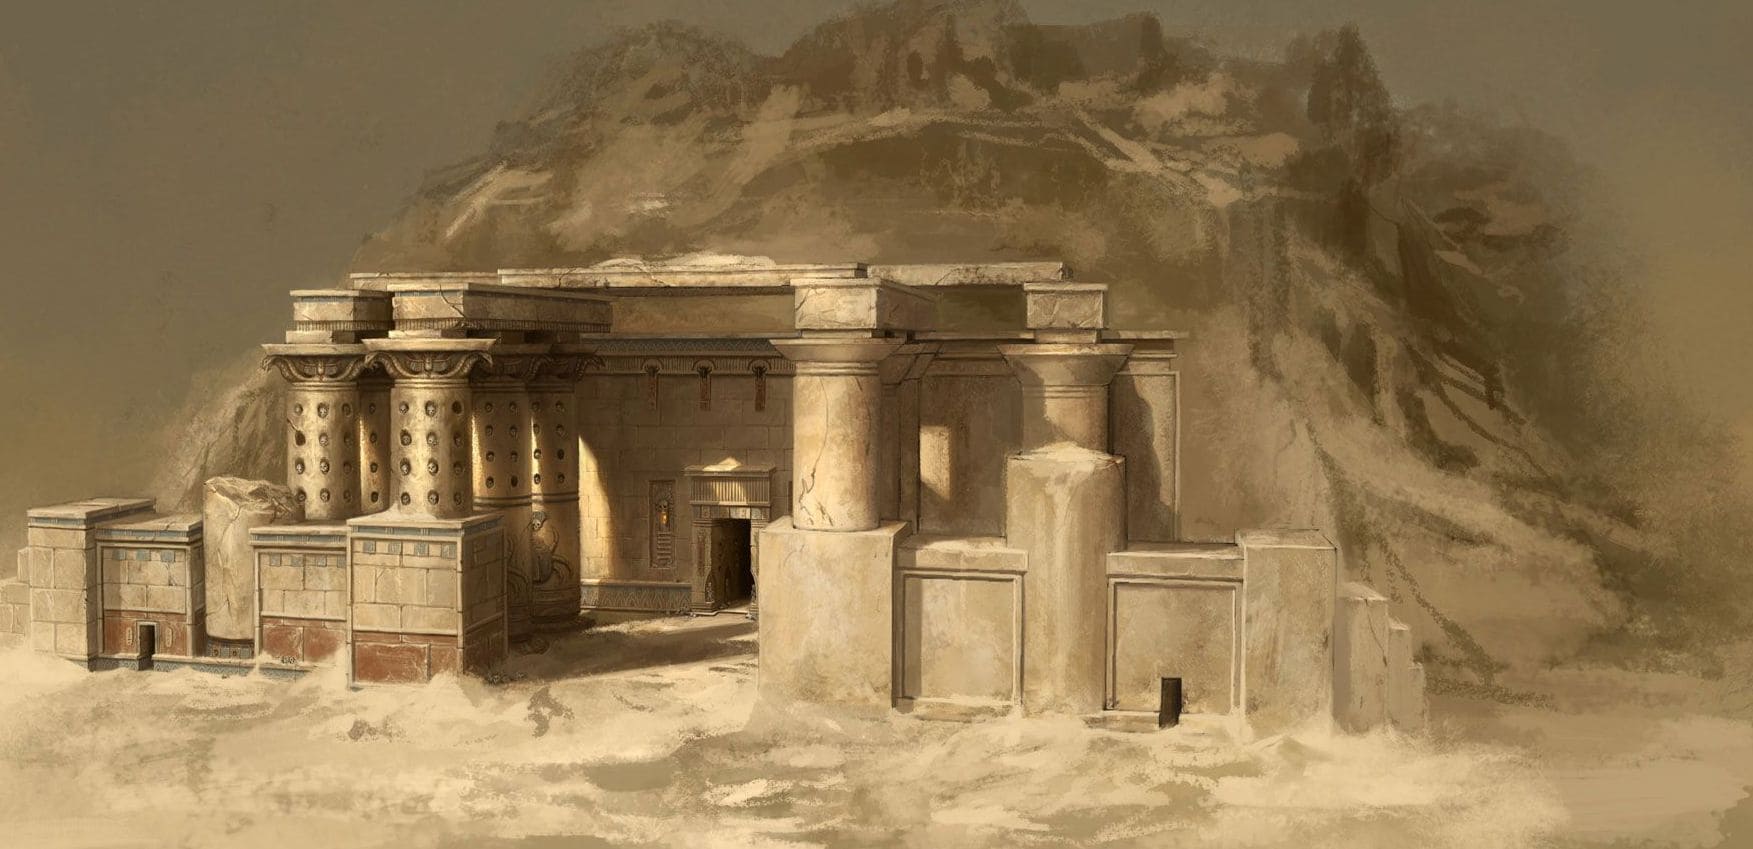 Затерянные храмы встречались и под землей